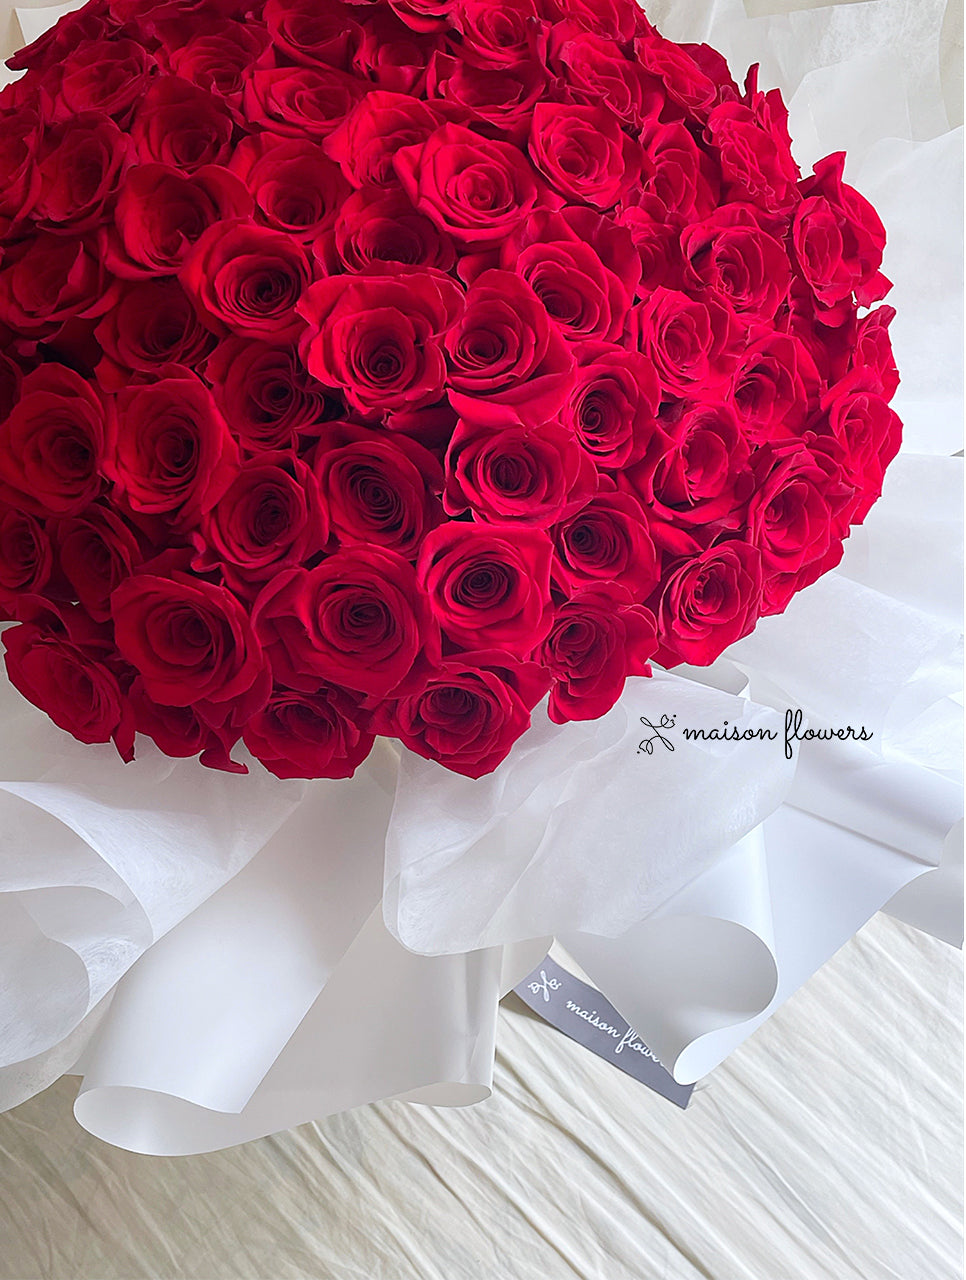 99支紅玫瑰, 求婚花束香港